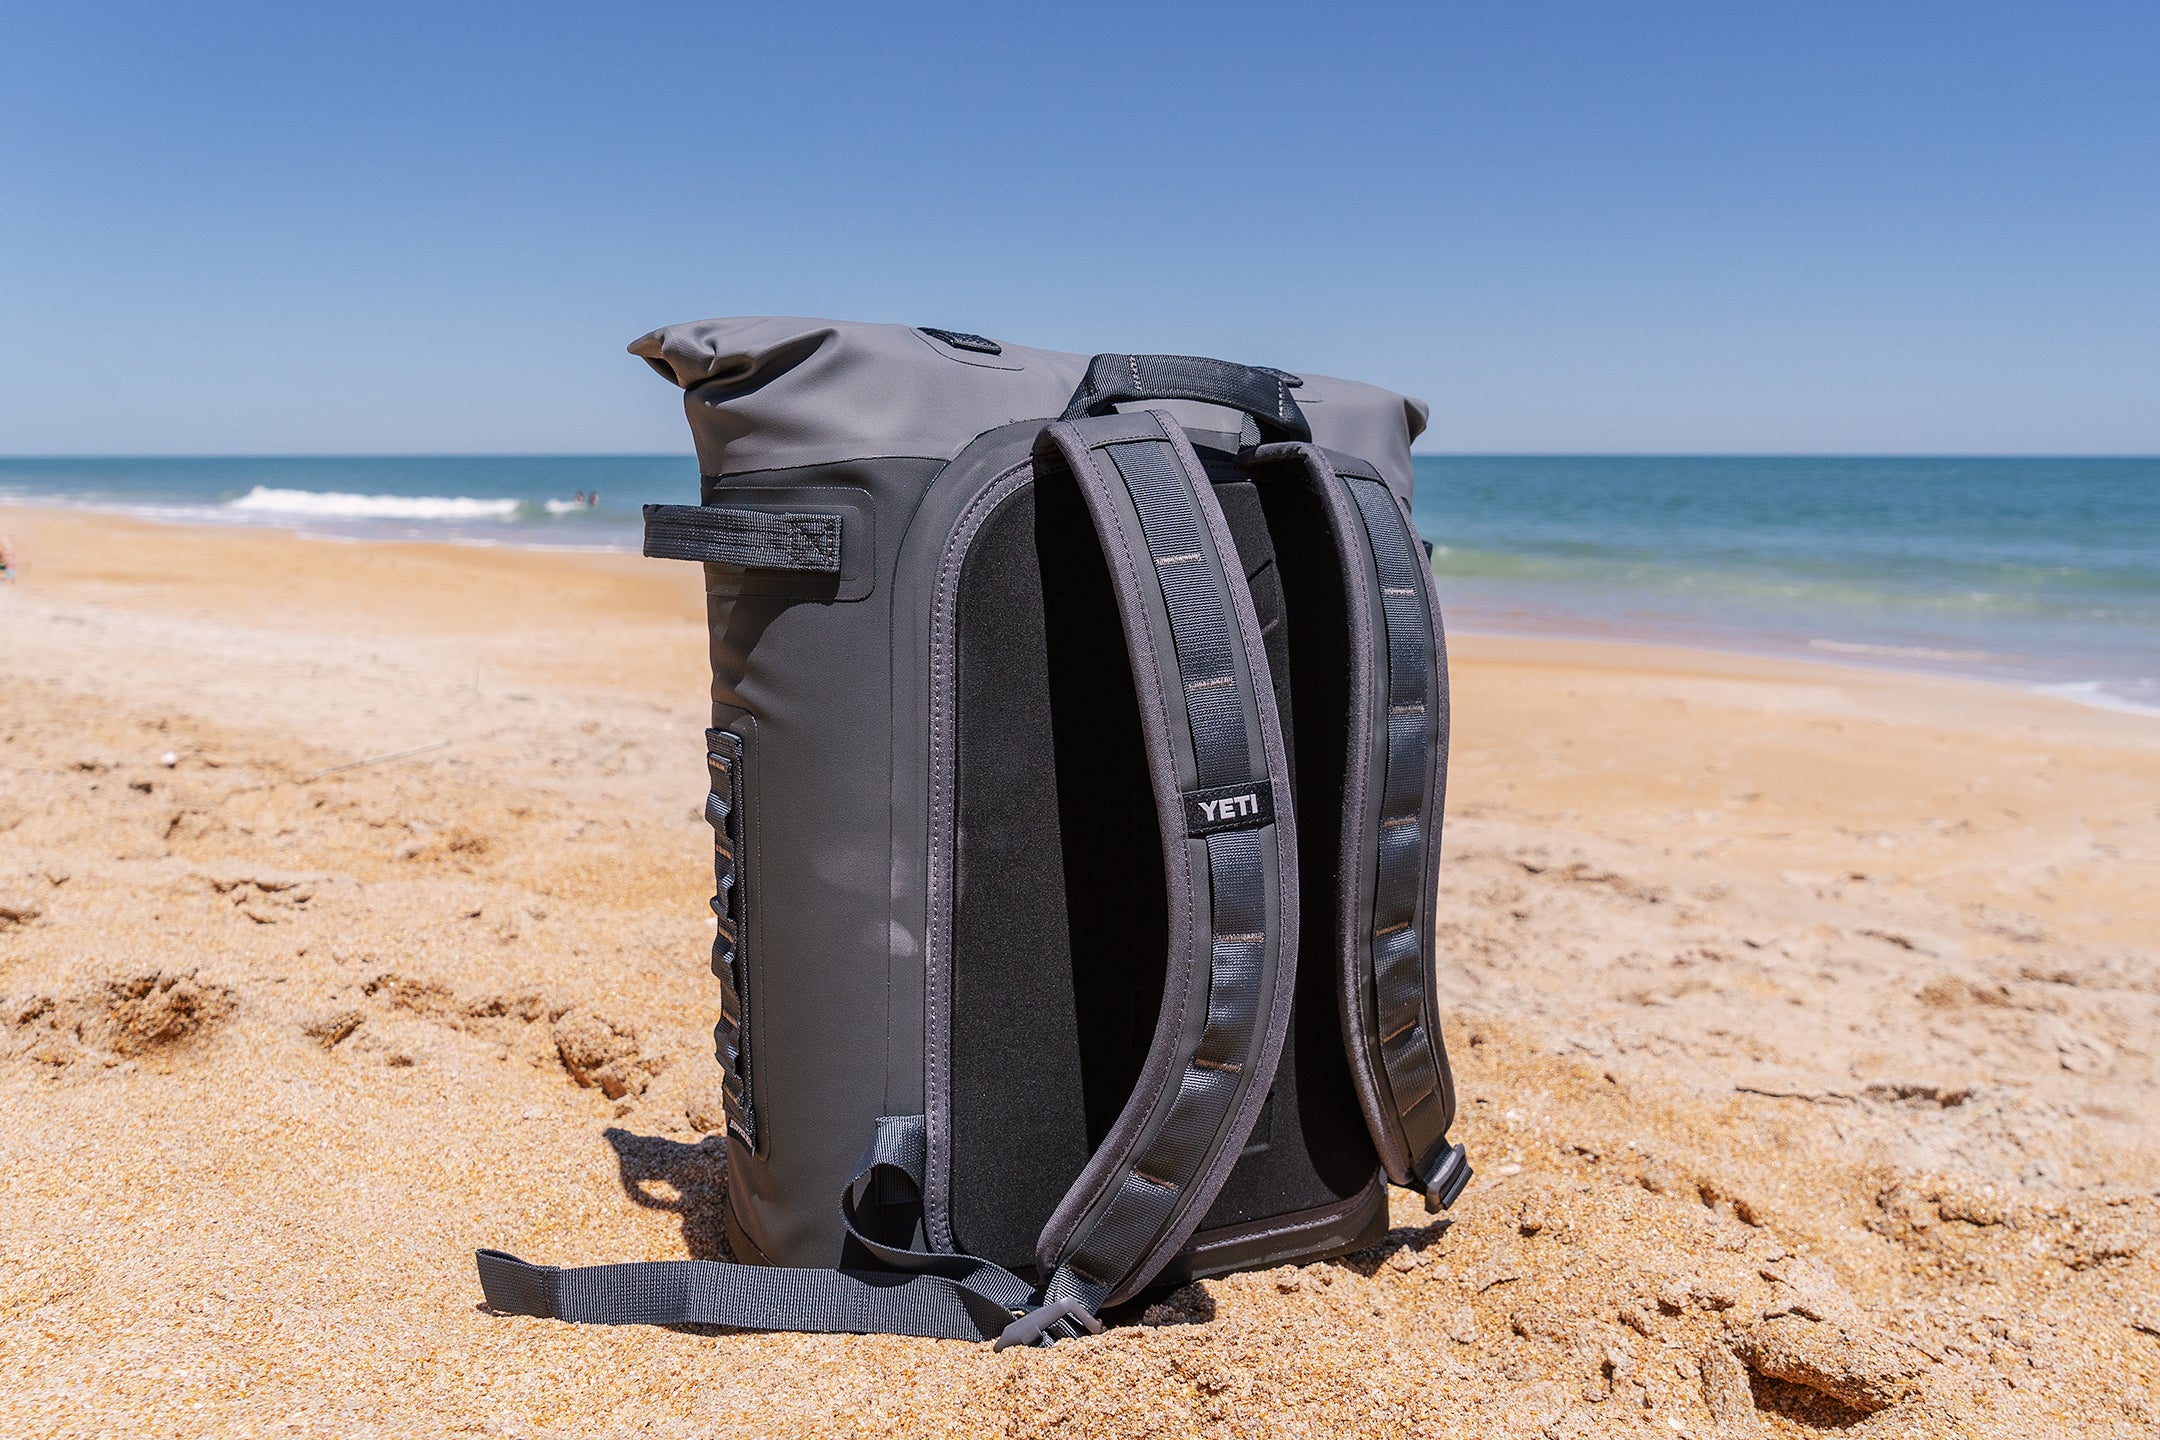 YETI Hopper M Series Backpack on a beach